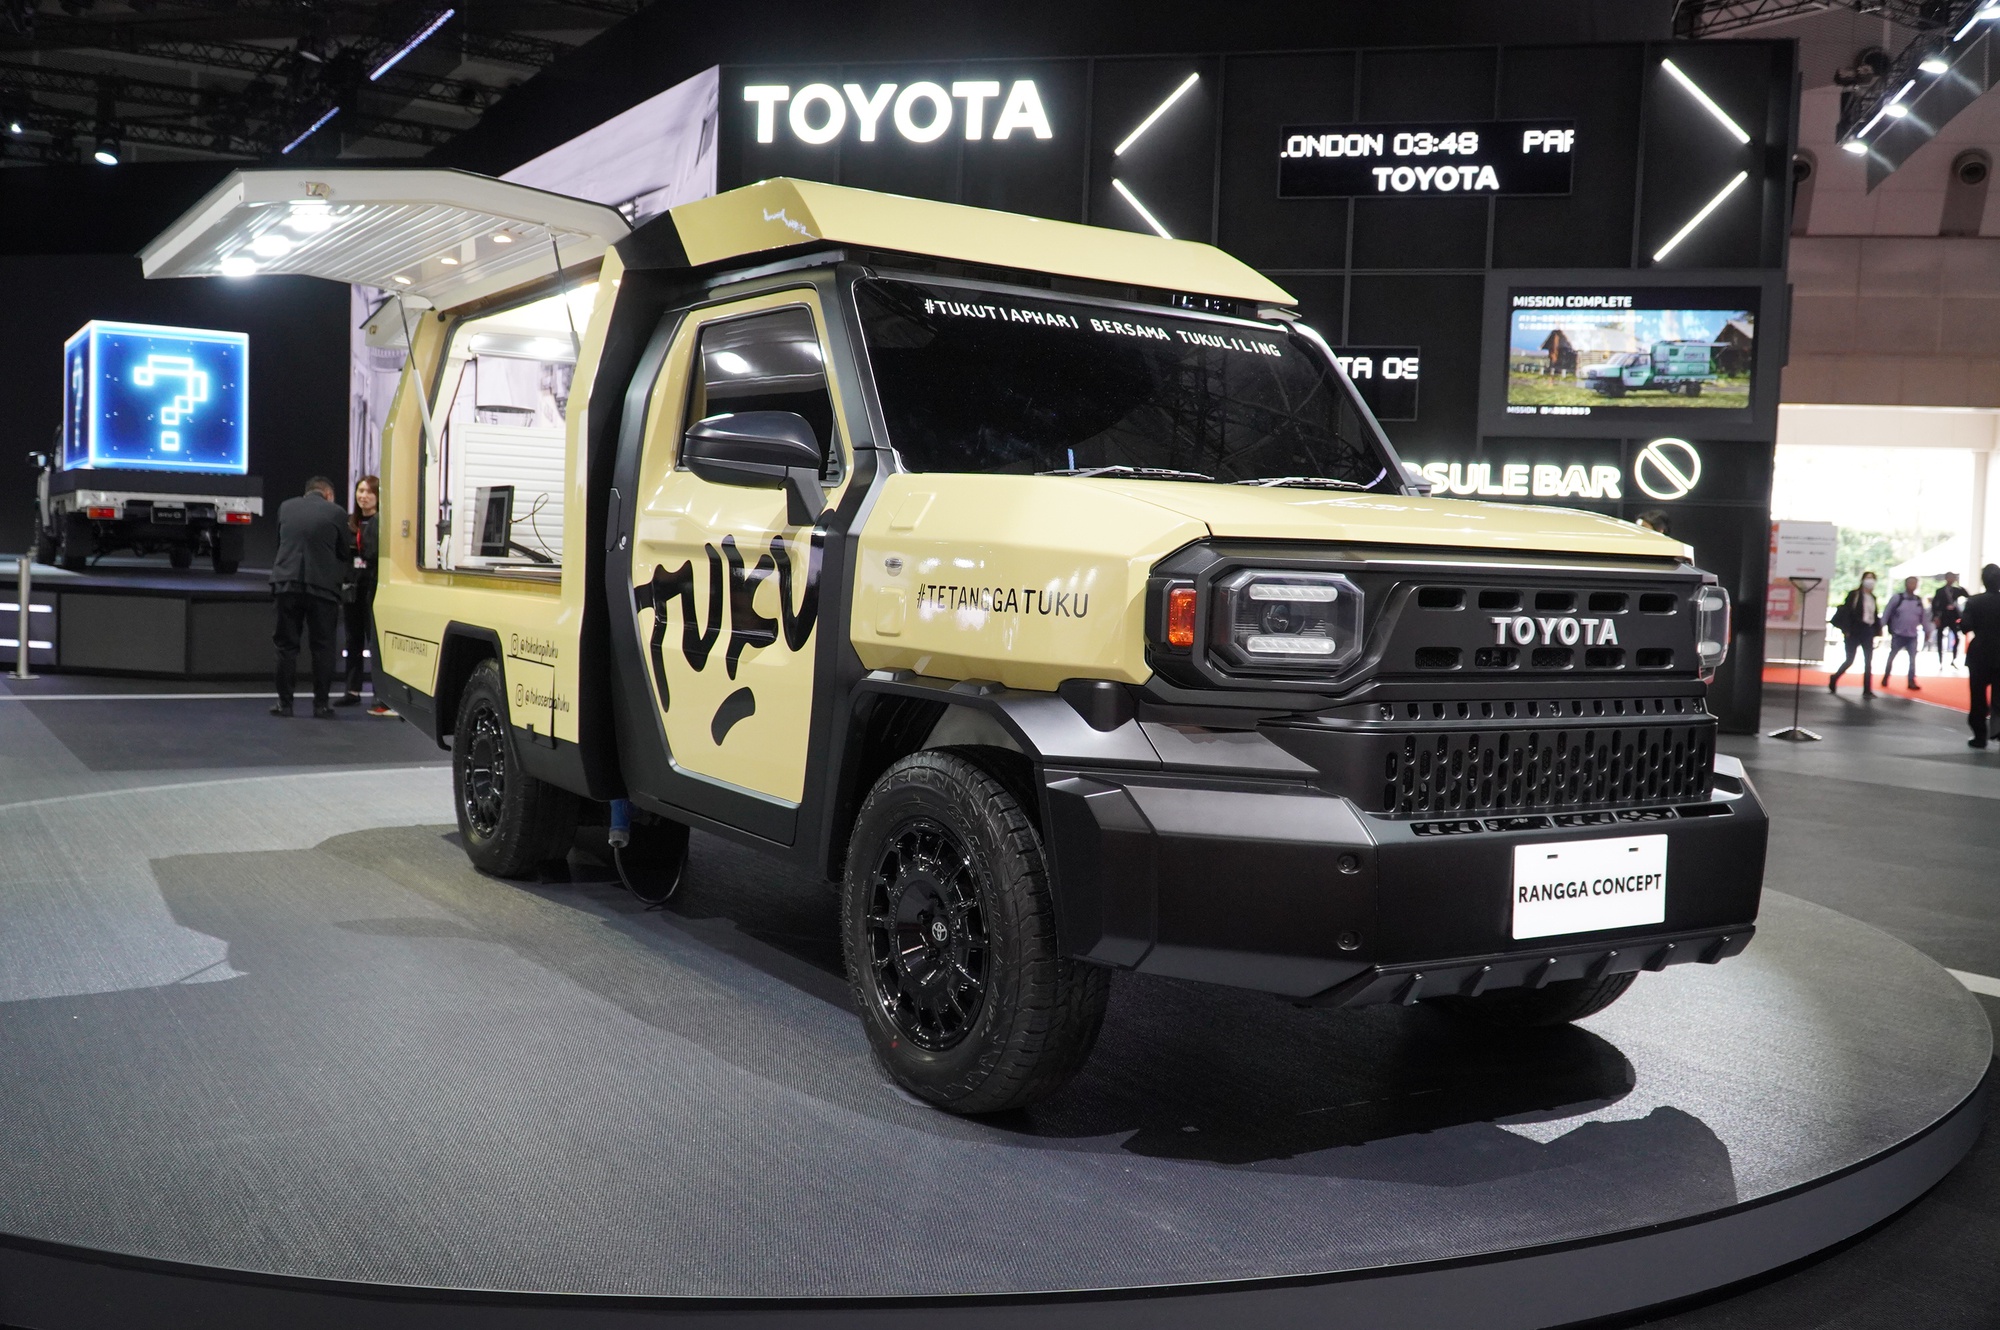 Toyota Rangga 'biến hình' như tắc kè,ếnhìnhnhưtắckègiáthấphơ<strong>ty le keo chinh xac</strong> giá rẻ hơn Hilux   - Ảnh 1.